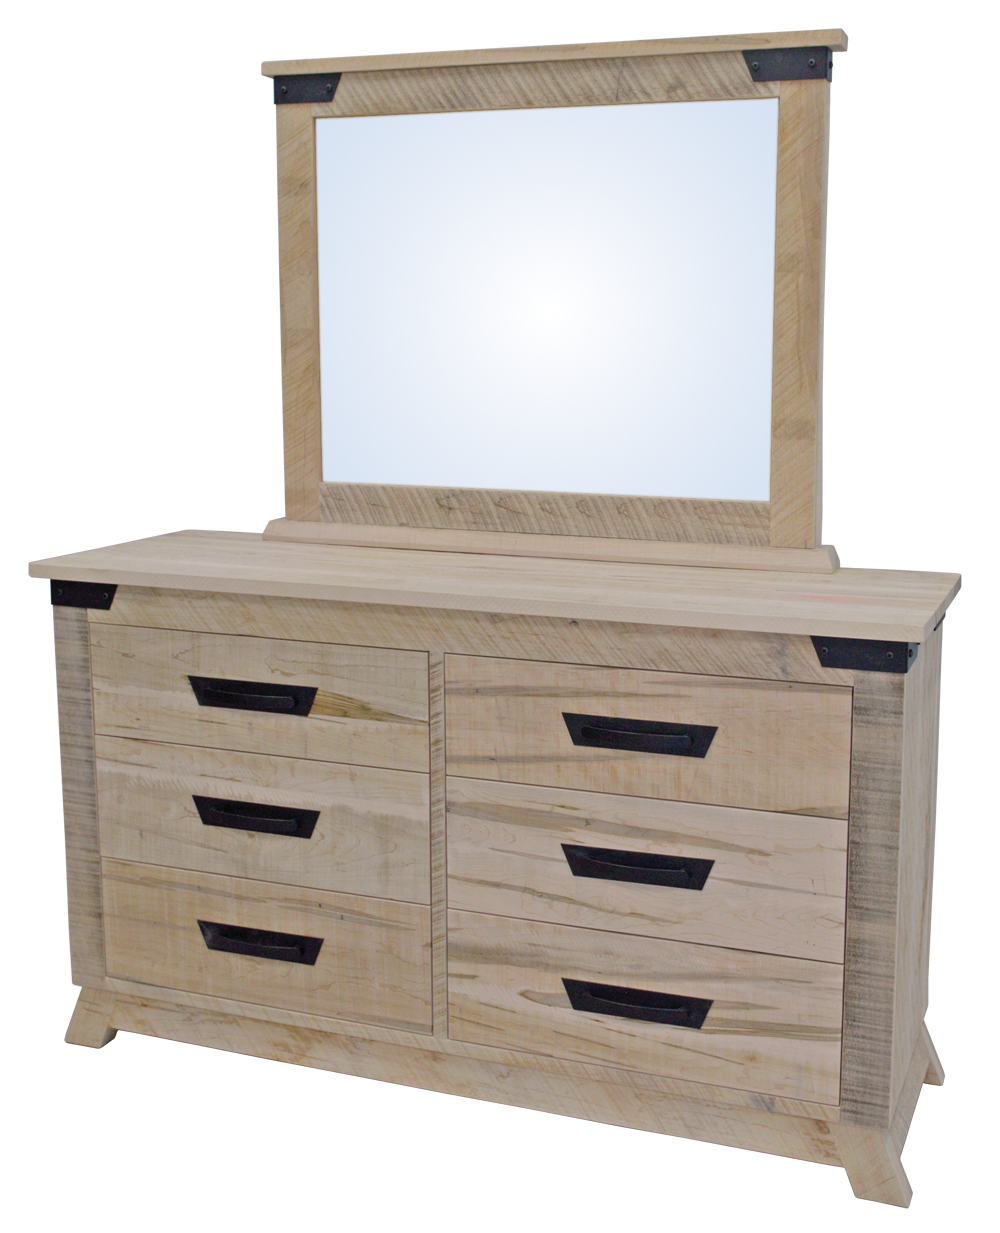 Hamilton 6 Drawer Dresser with Mirror